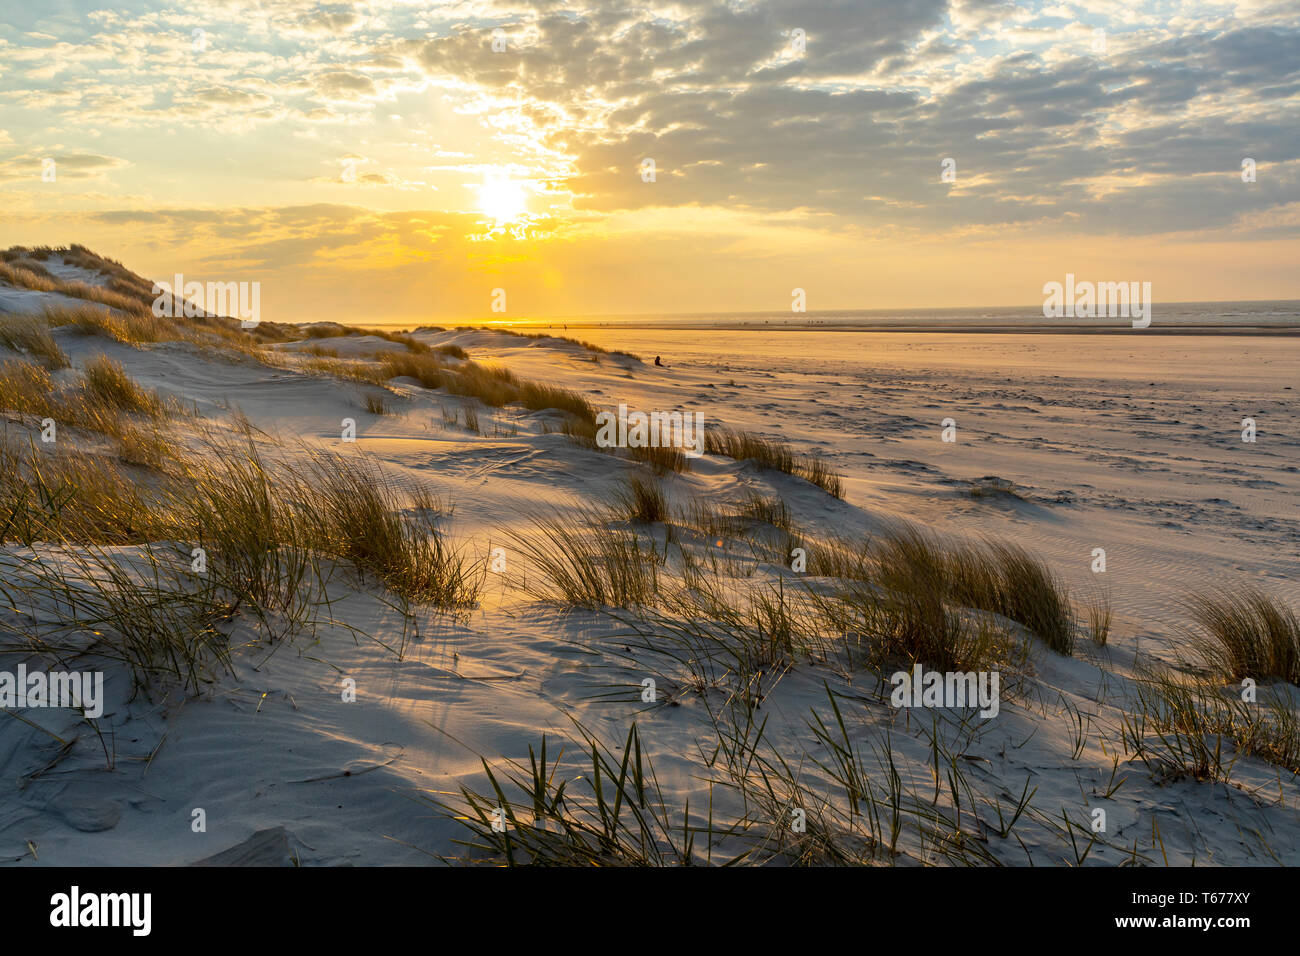 L'île de Juist, Mer du Nord Frise orientale, plage, dunes, paysage, crépuscule, Basse-Saxe, Allemagne, Banque D'Images